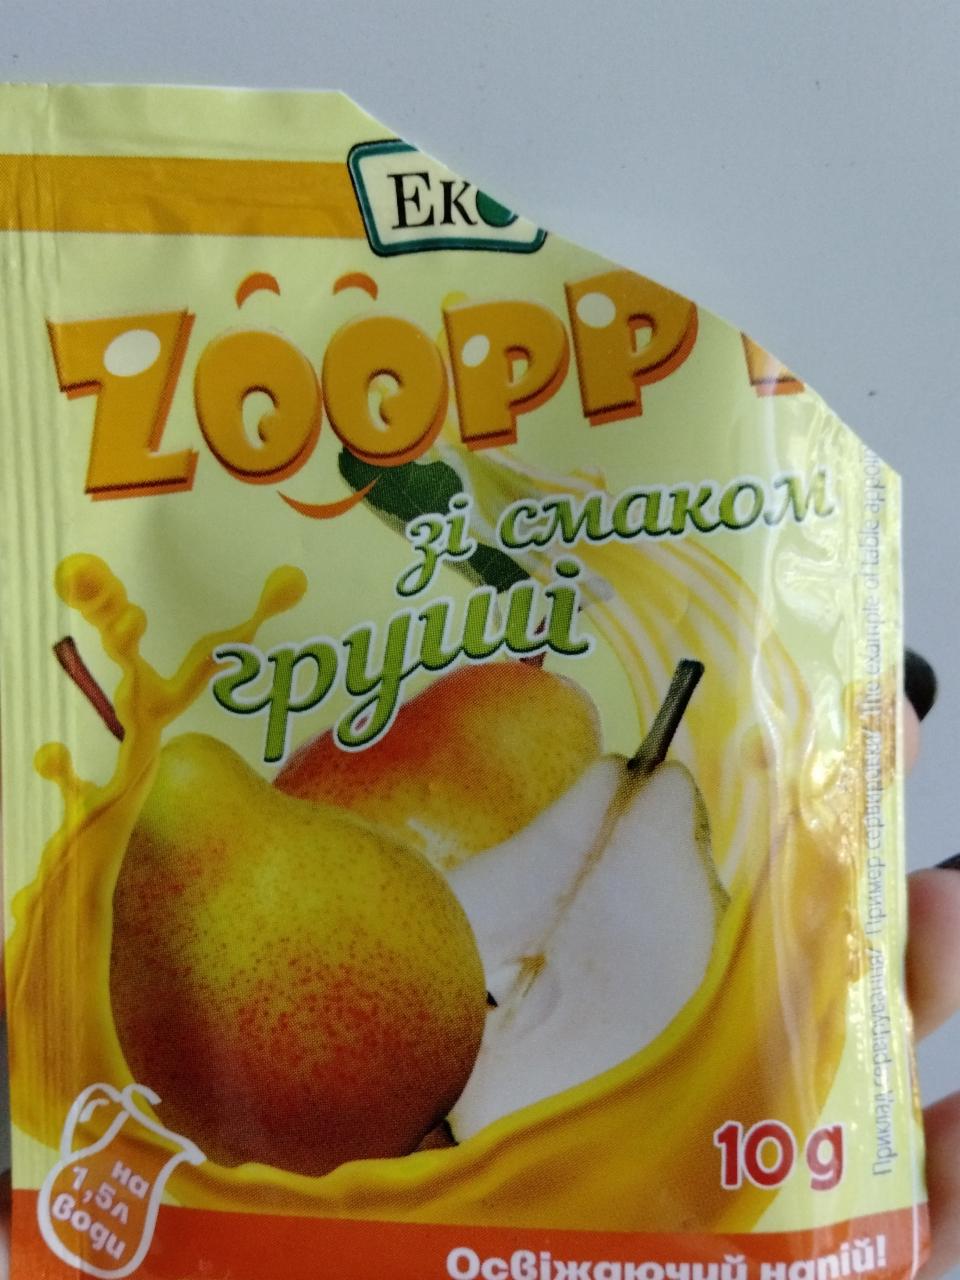 Фото - Концентрат сухой напитка безалкогольного Zooppy со вкусом груши Eko (Эко)